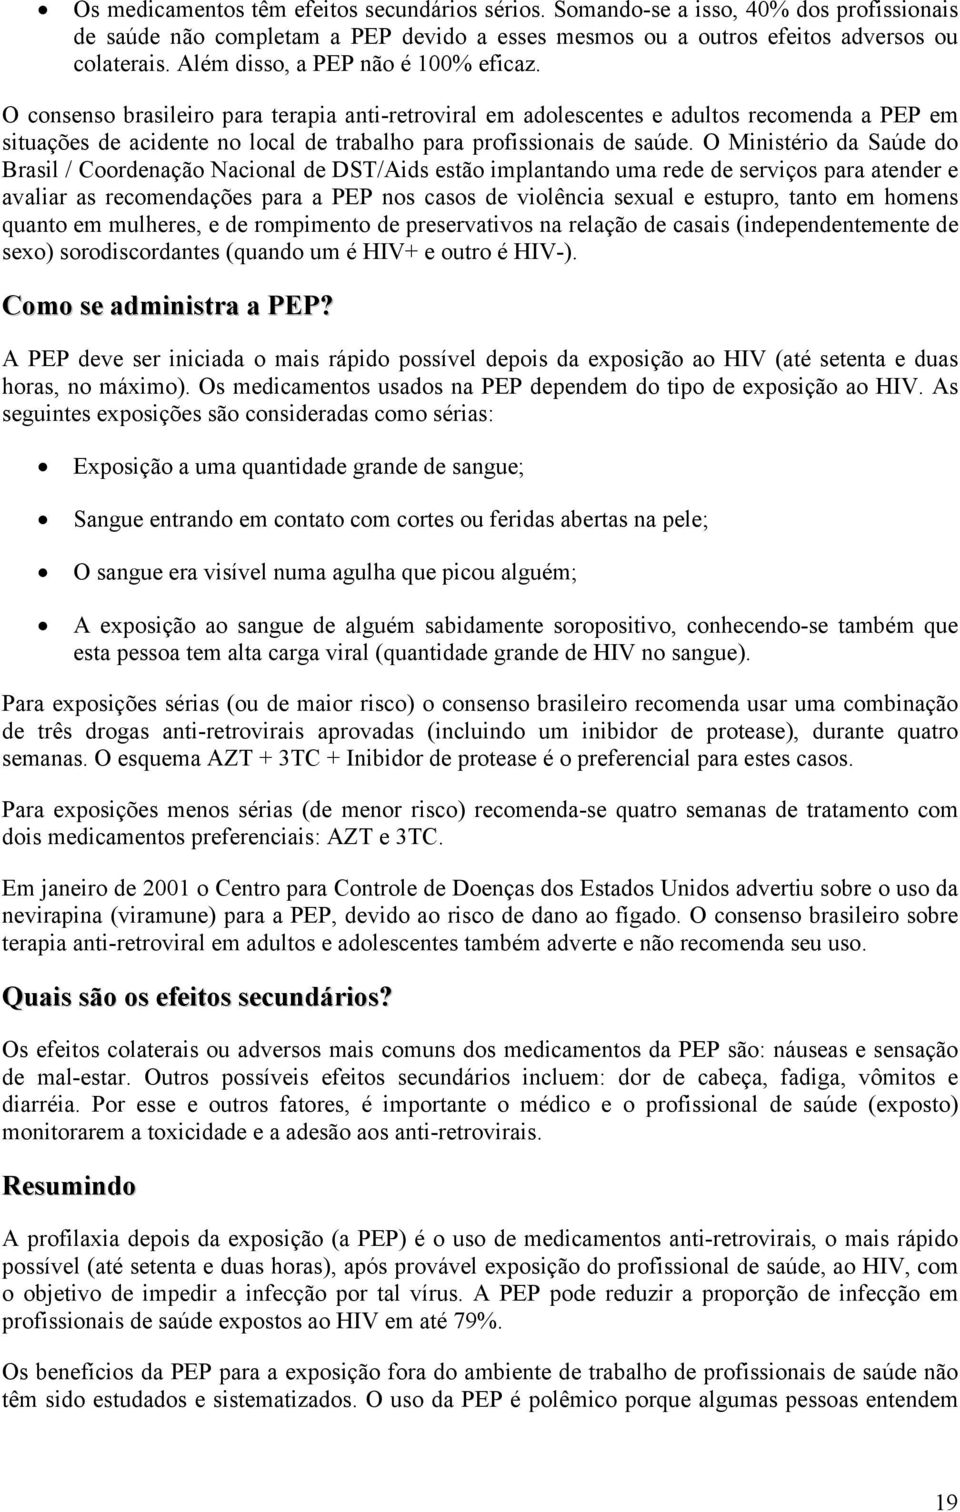 O consenso brasileiro para terapia anti-retroviral em adolescentes e adultos recomenda a PEP em situações de acidente no local de trabalho para profissionais de saúde.